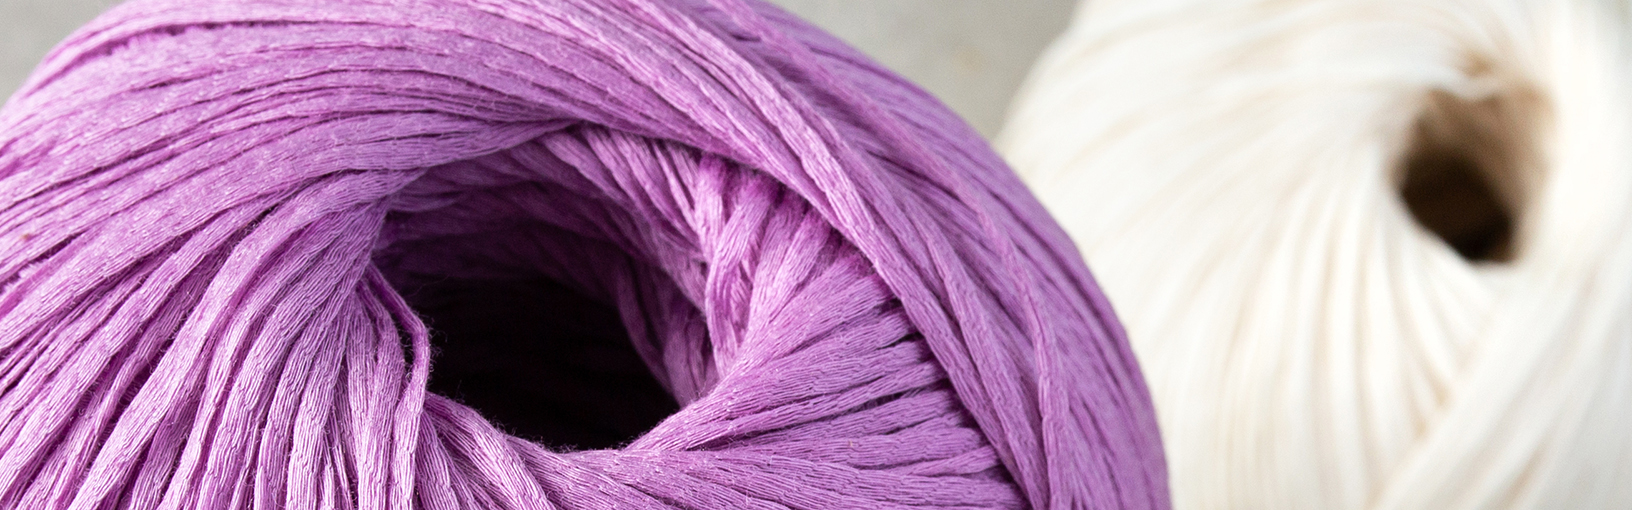 Hilos de alta calidad para tejer, crochet y fieltro Hilos Lana Grossa | Hilos veganos